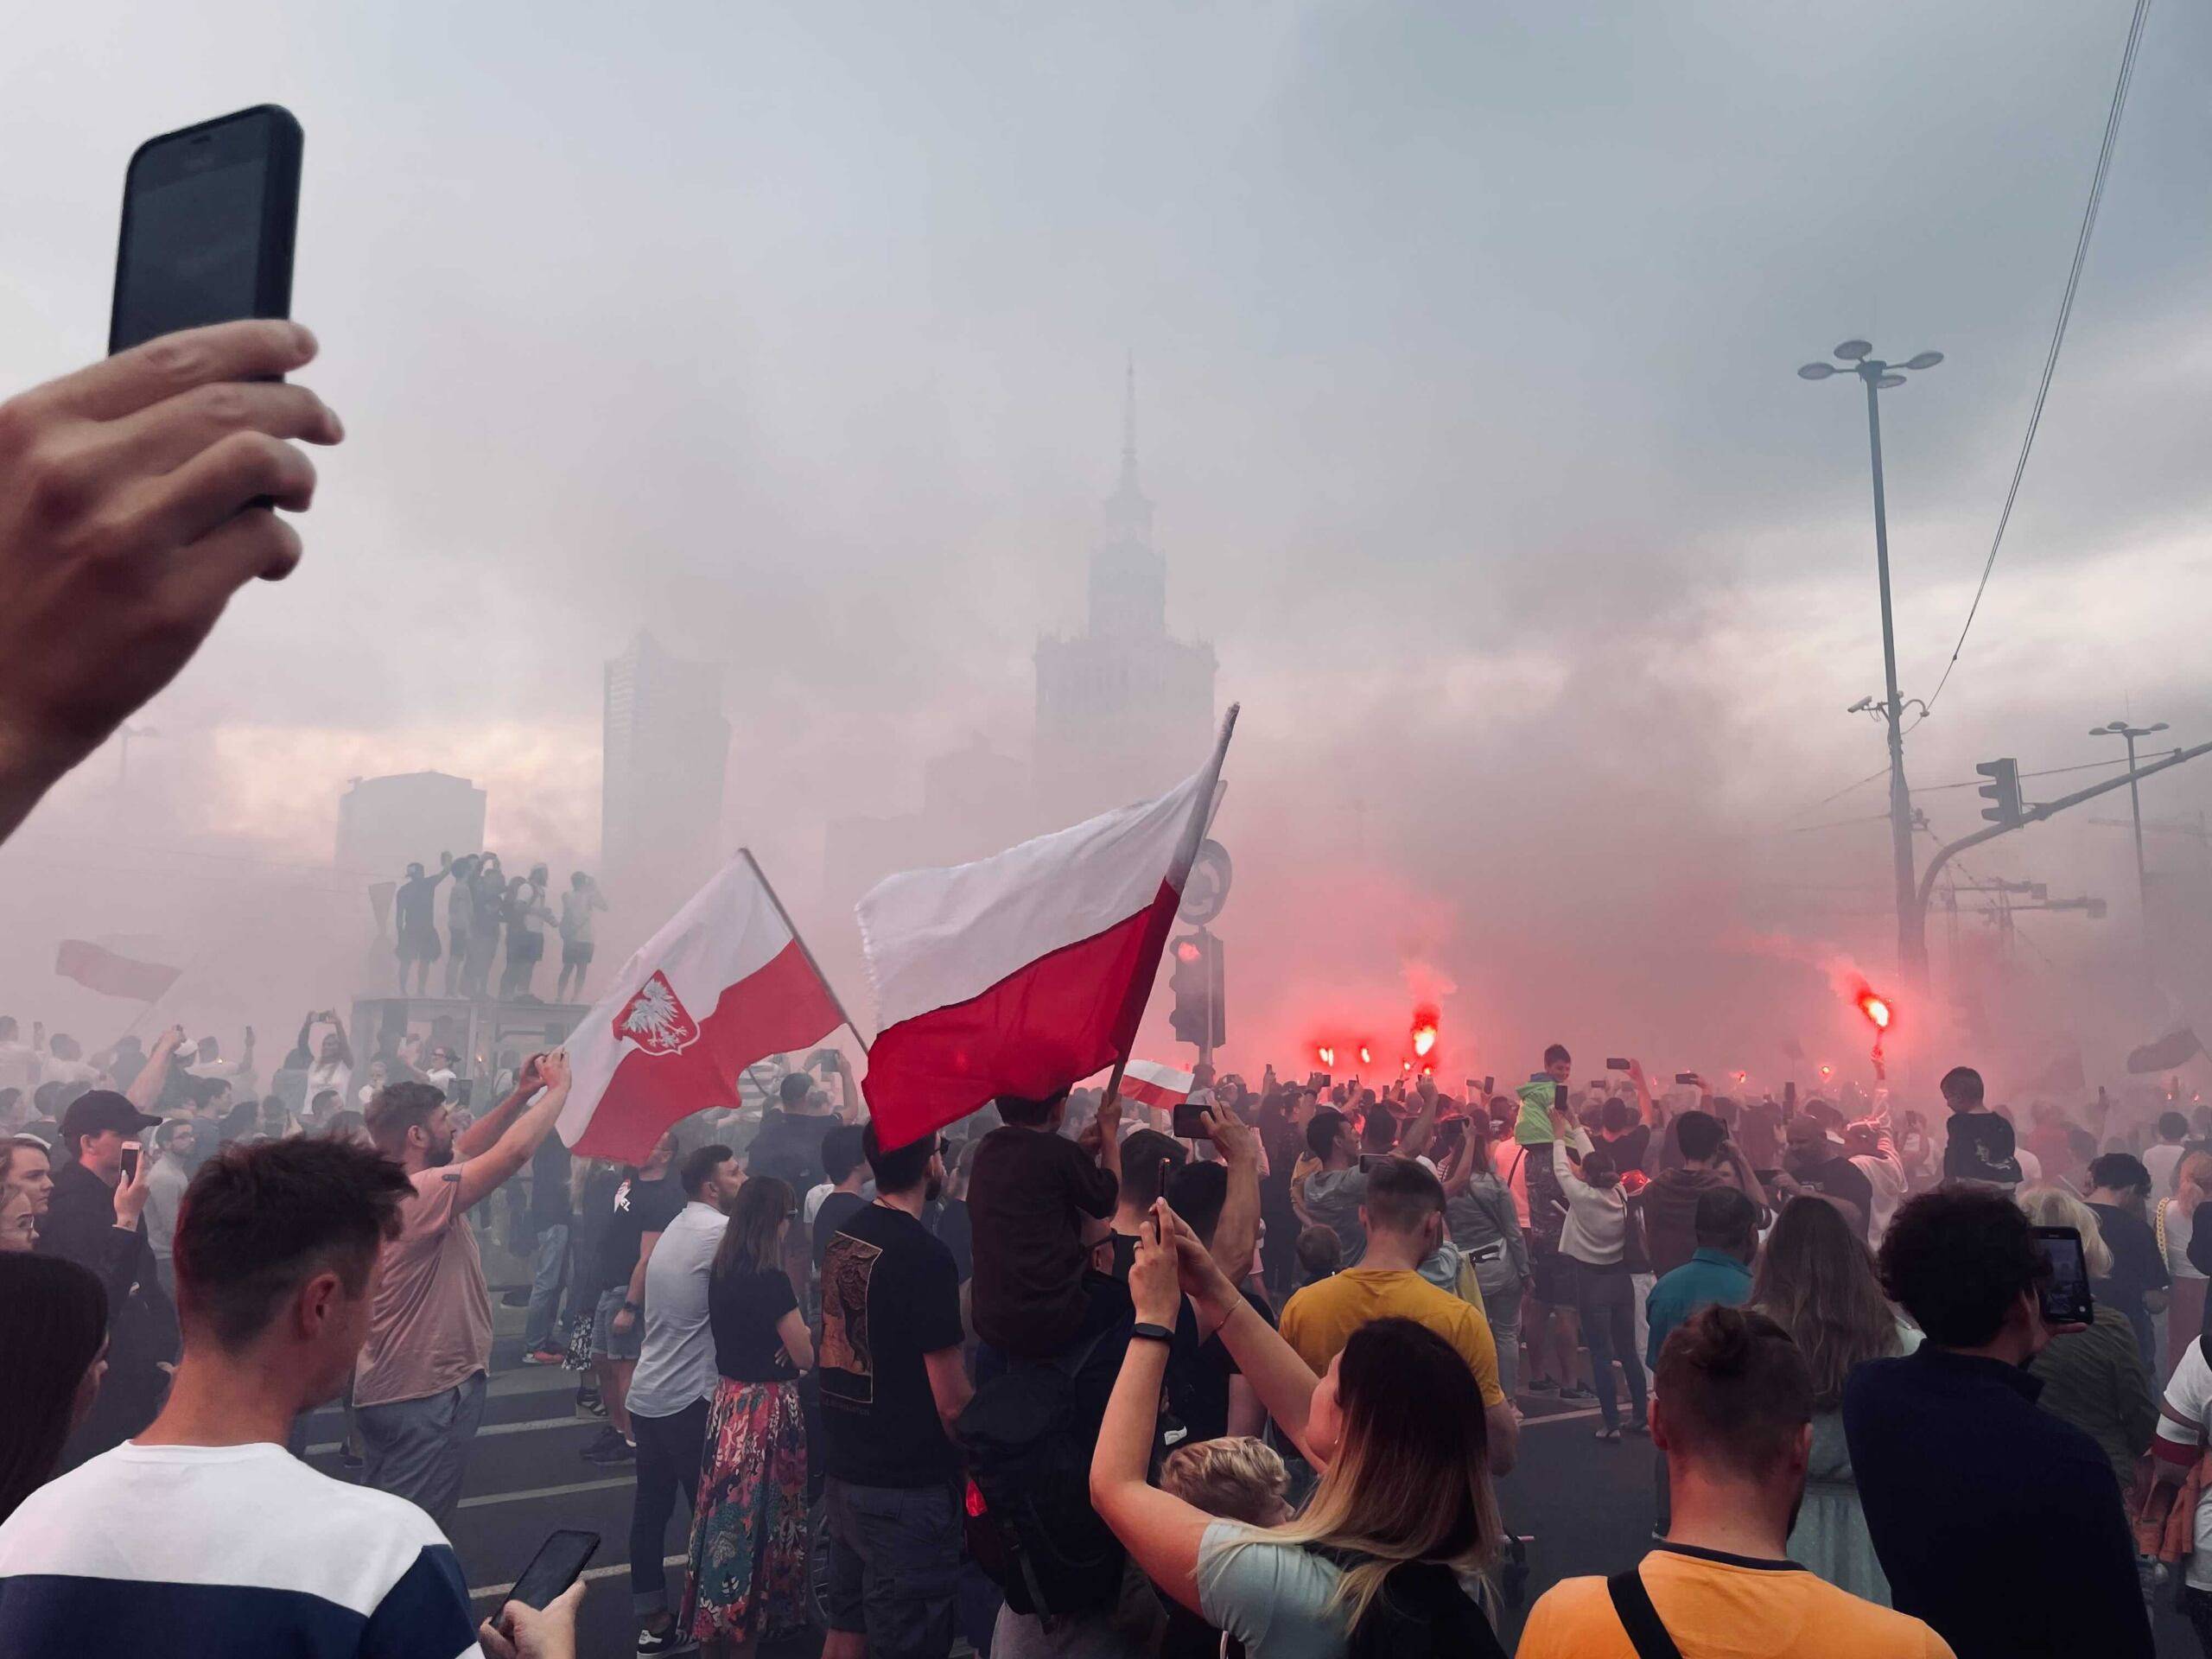 Race odpalone podczas obchodów rocznicy powstania warszawskiego